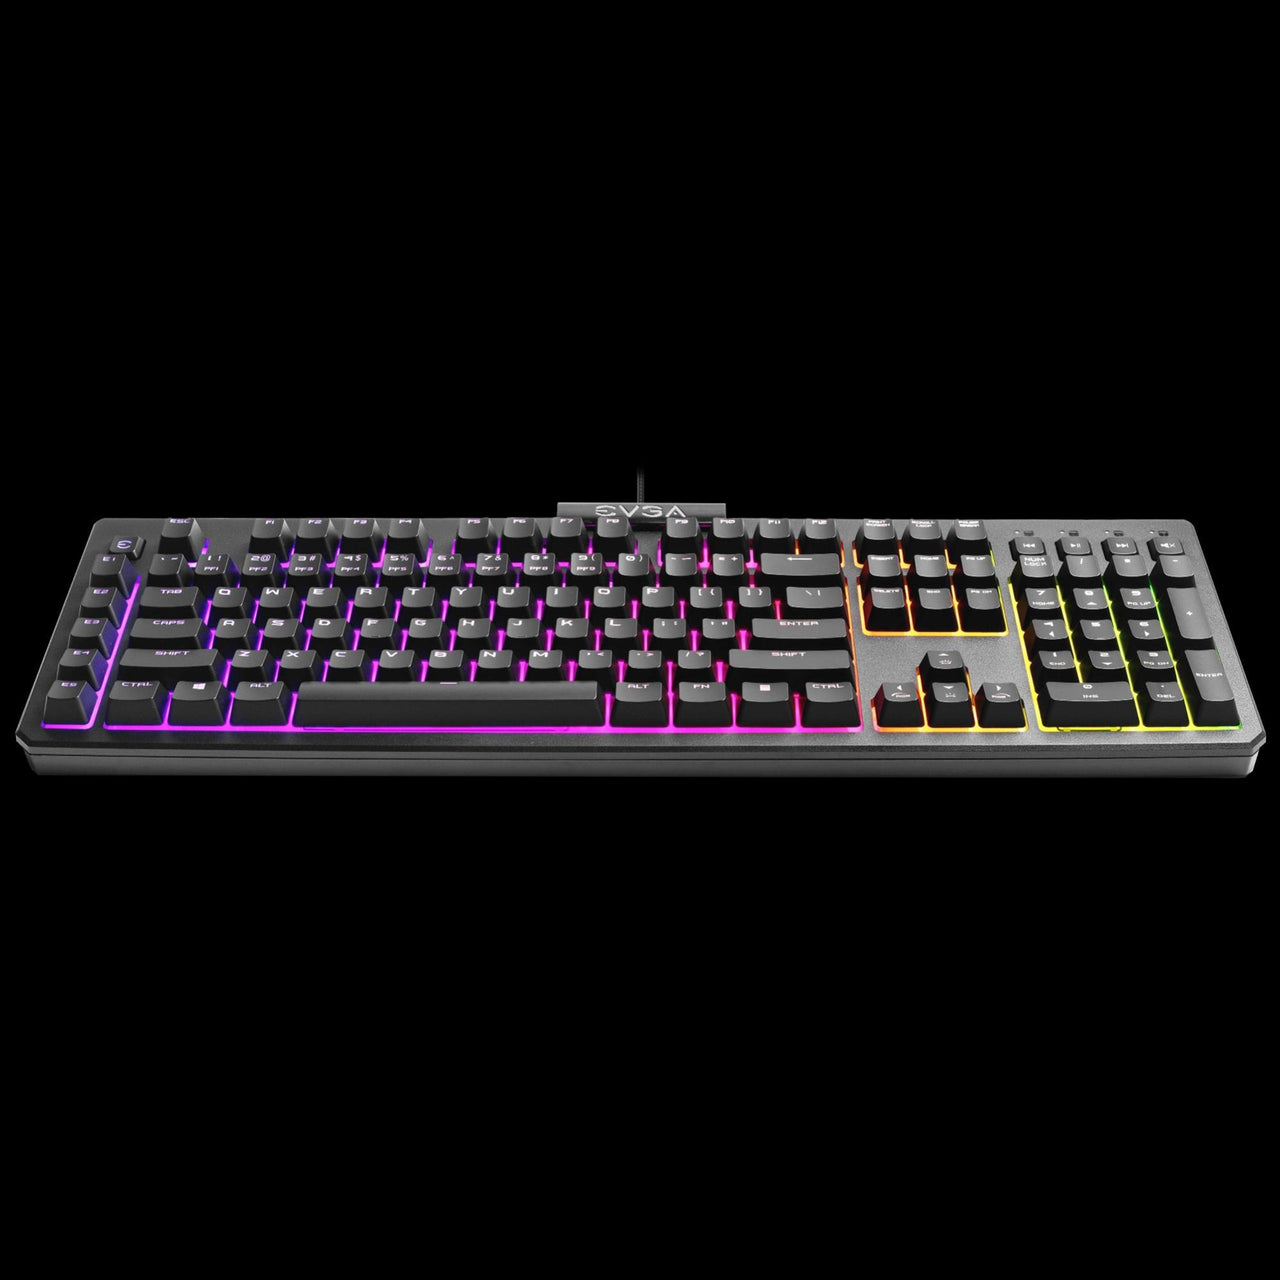 EVGA Z12 RGB Gaming Backlit LED Keyboard